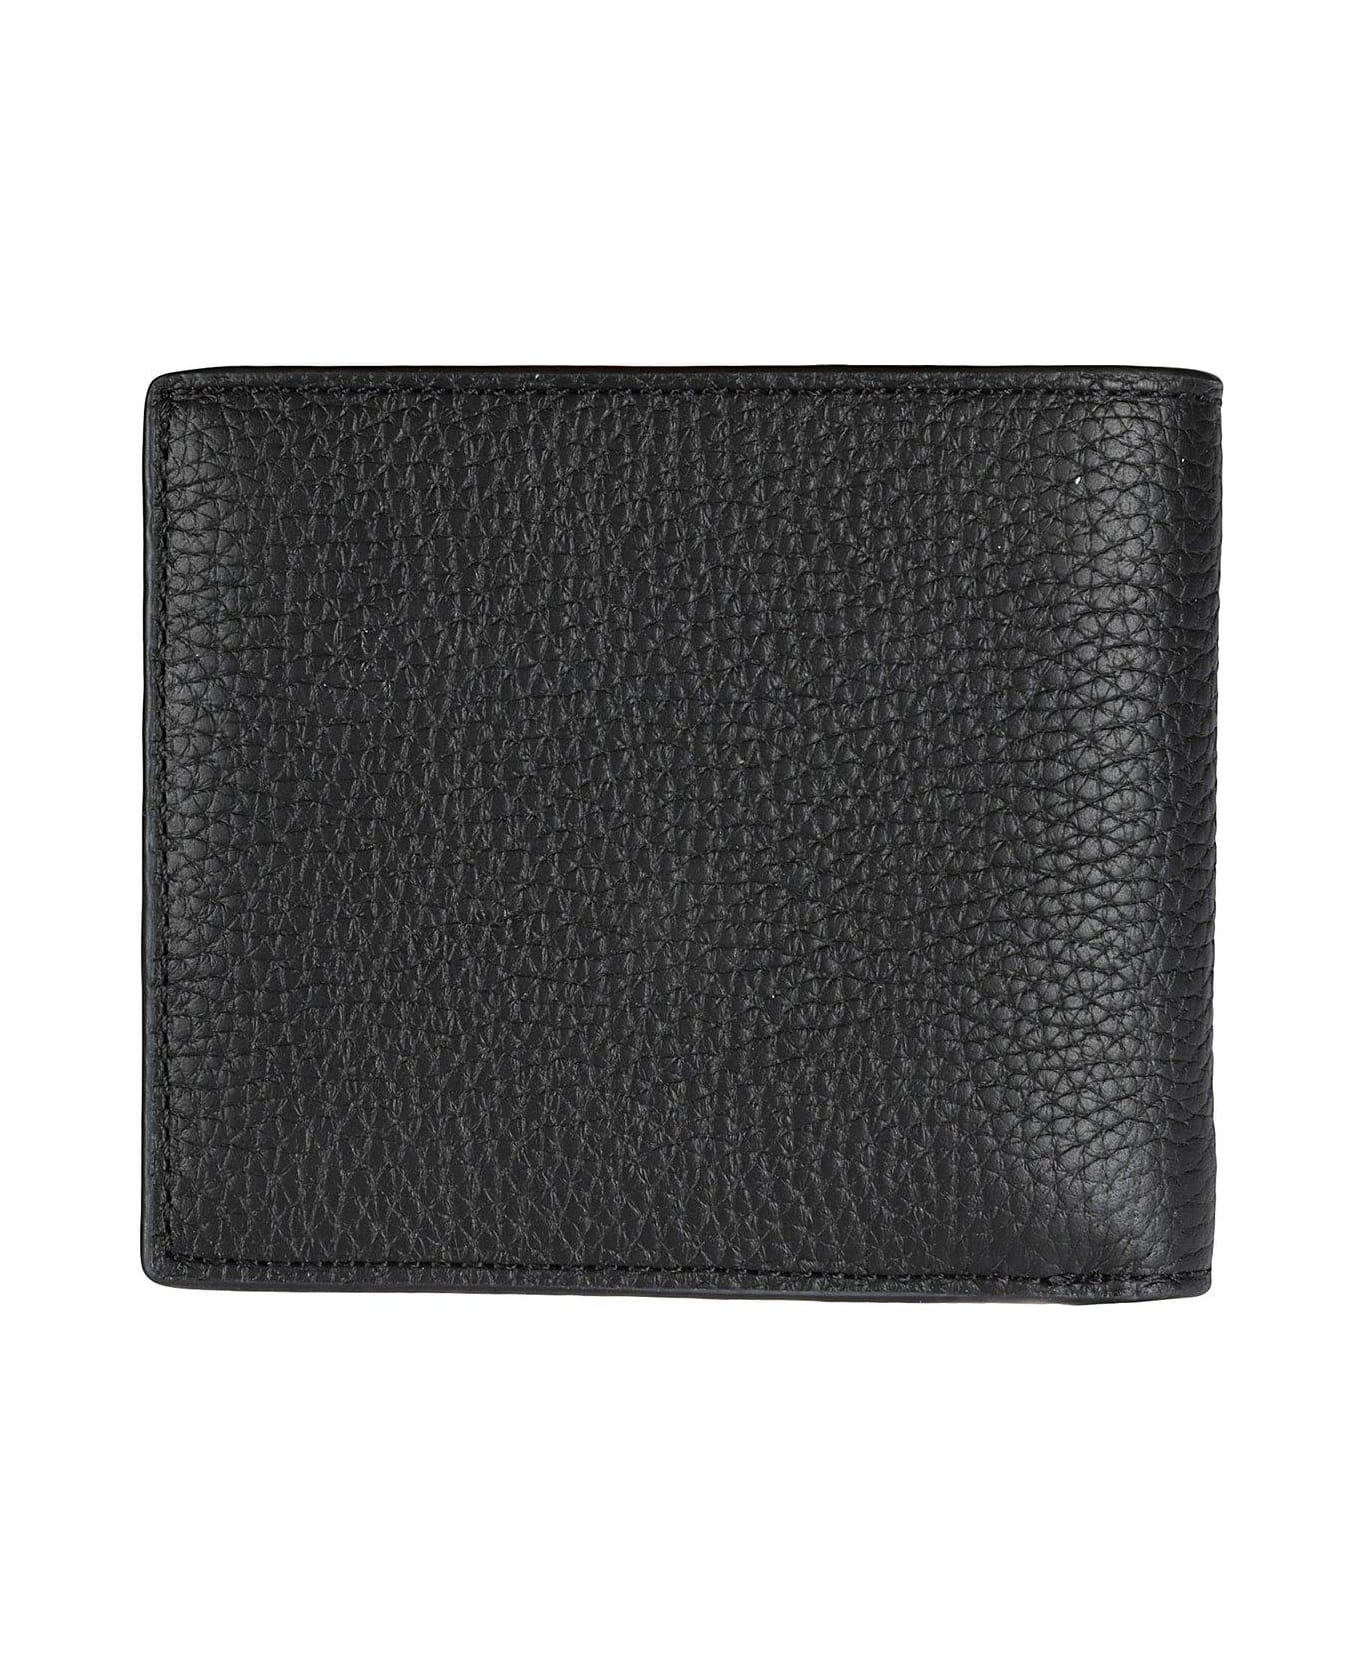 Michael Kors Hudson Bi-fold Wallet - Black 財布